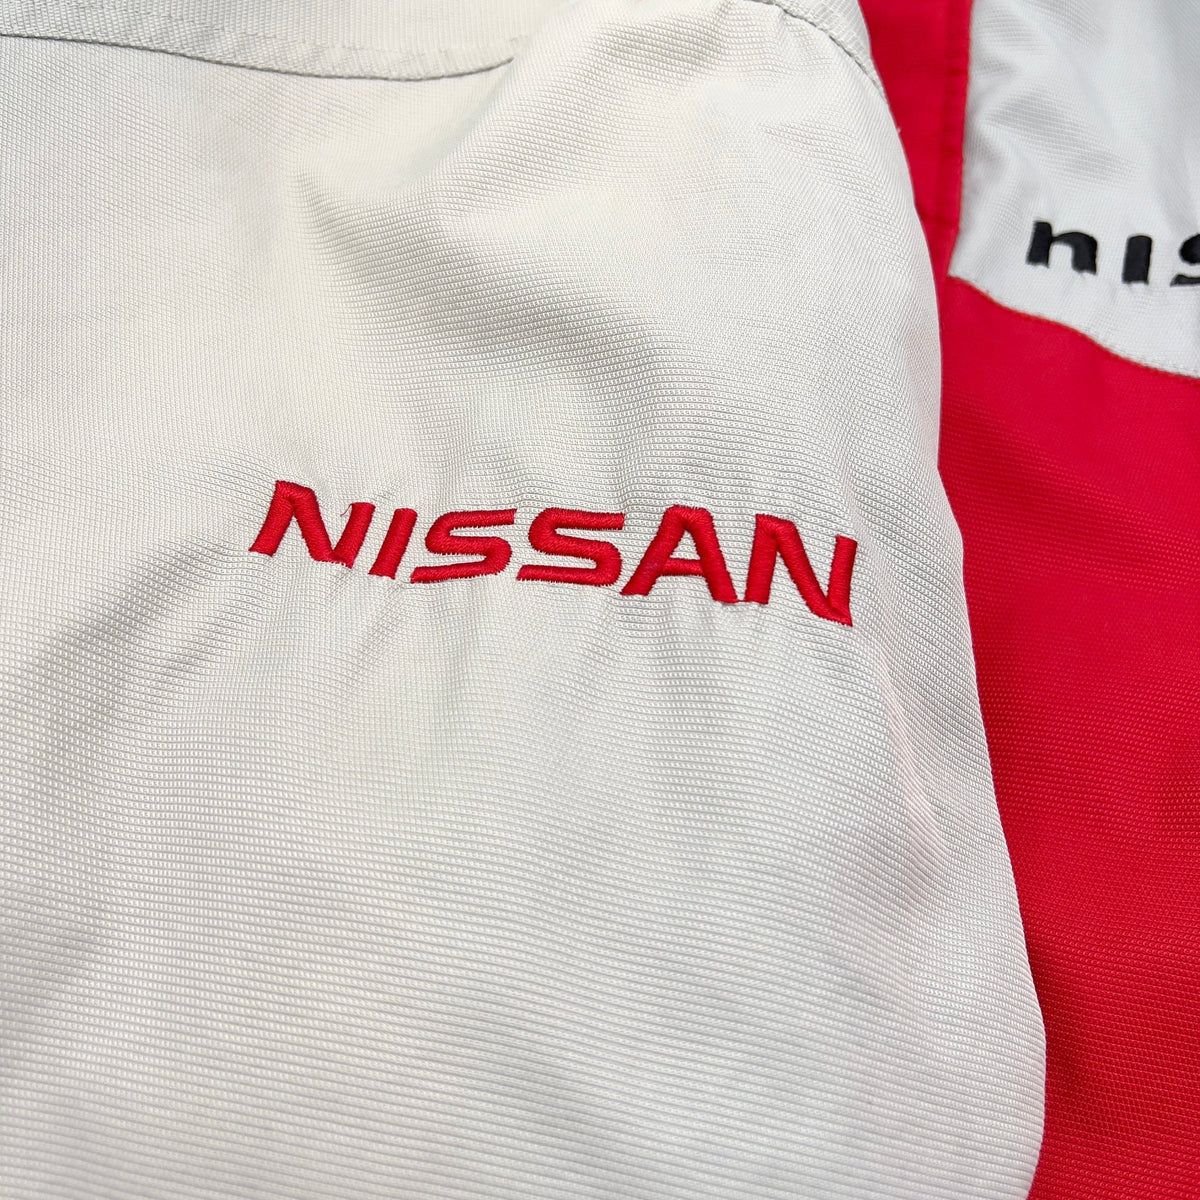 Vintage 2003 JDM Nissan Nismo Japan Reversible Bench Coat Hoodie Jacket - Sugoi JDM